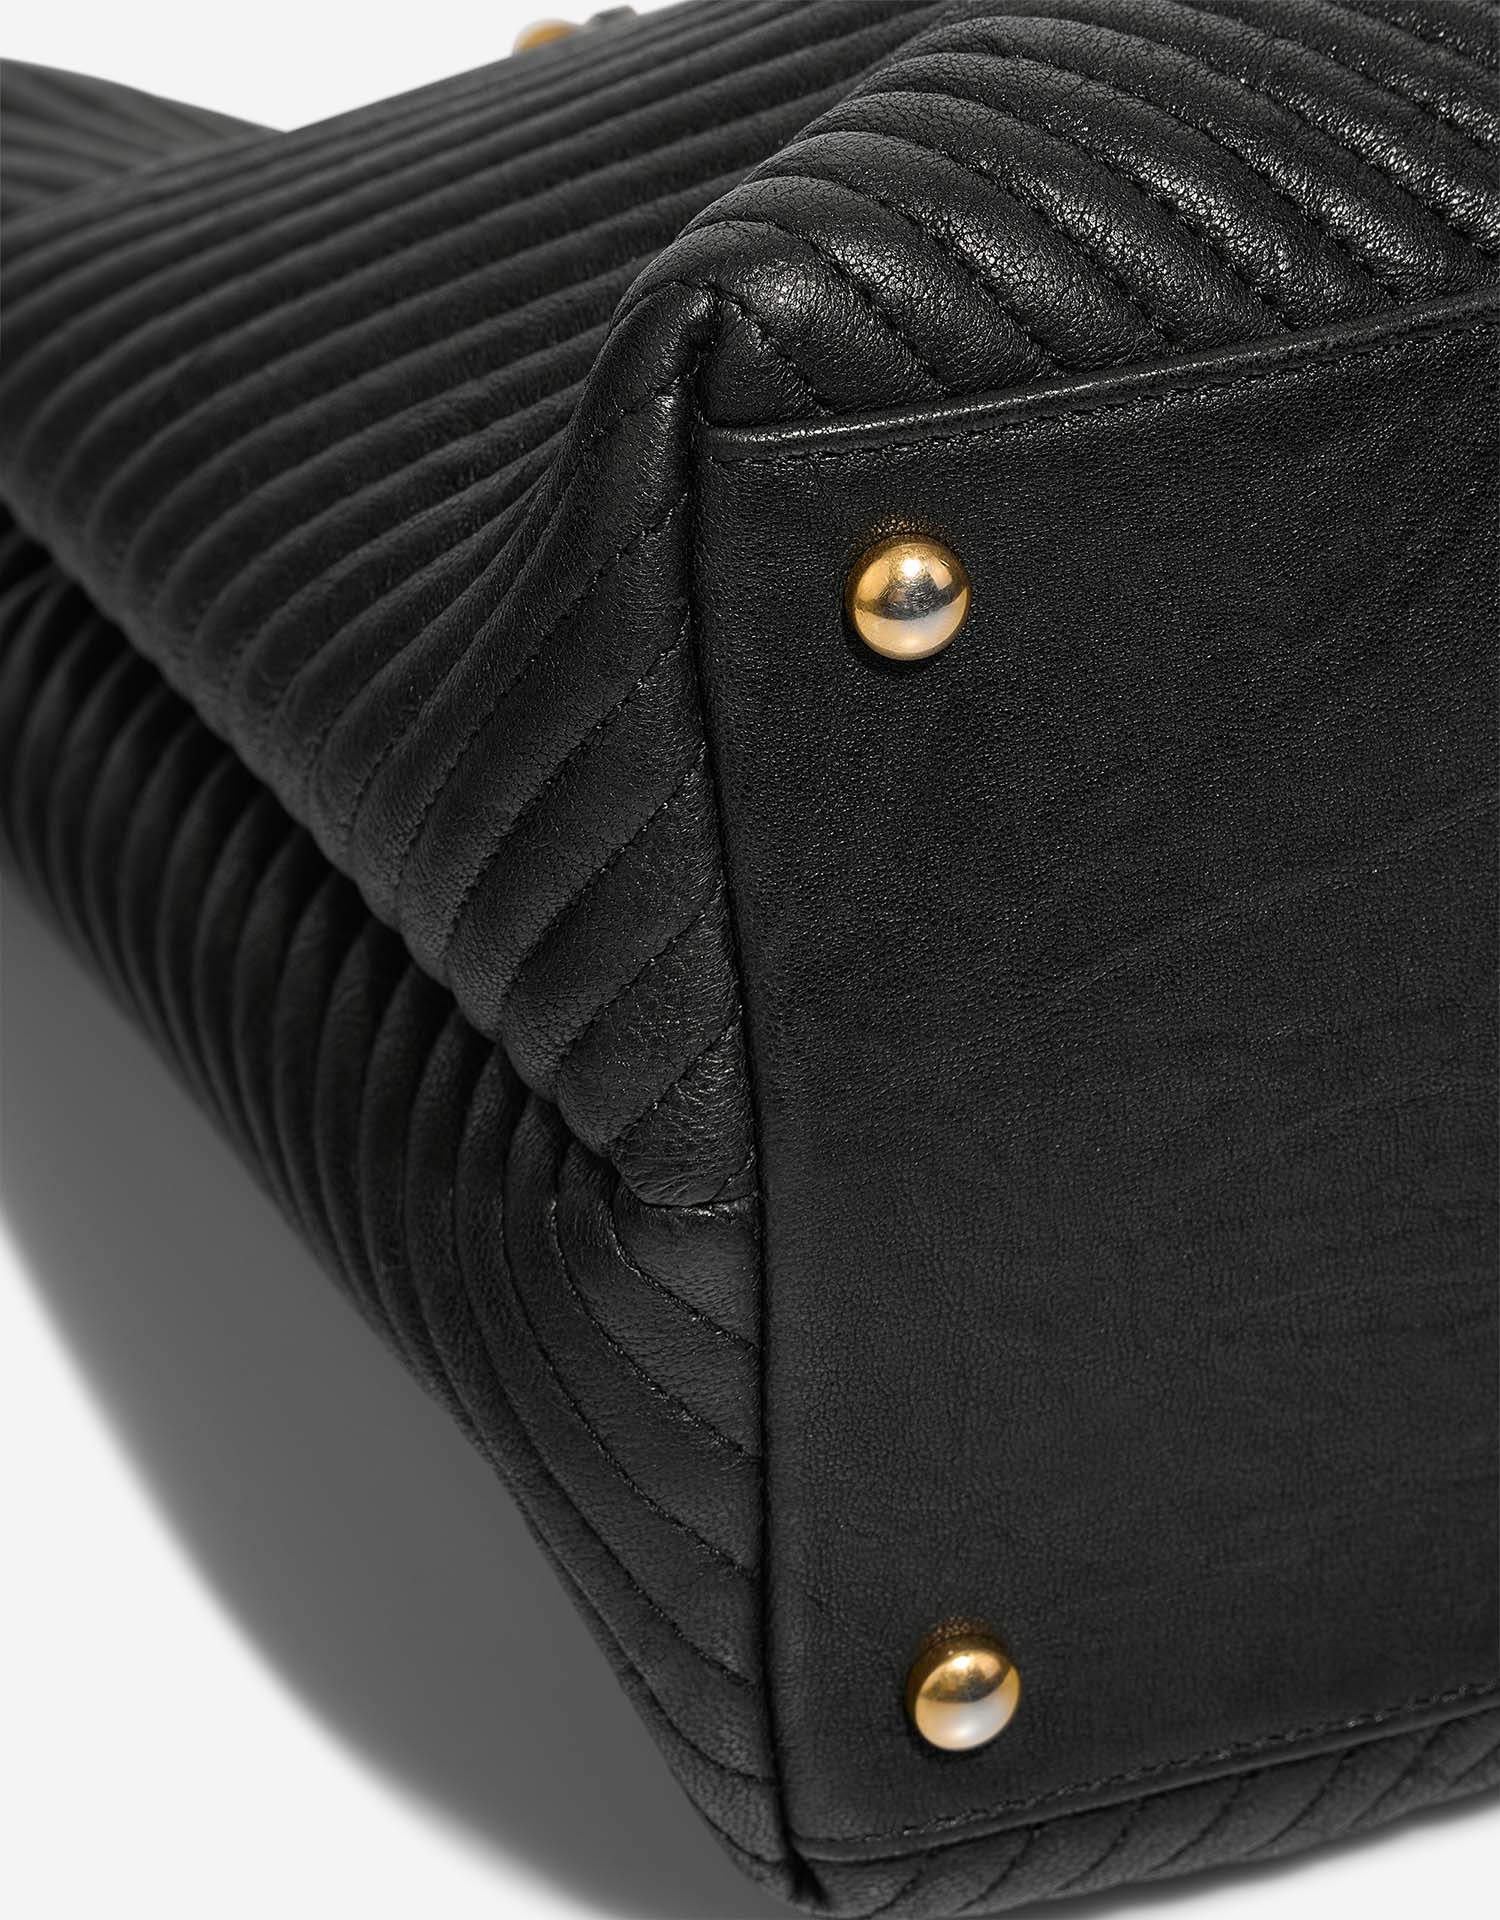 Chanel GST Large Schwarz Gebrauchsspuren| Verkaufen Sie Ihre Designer-Tasche auf Saclab.com